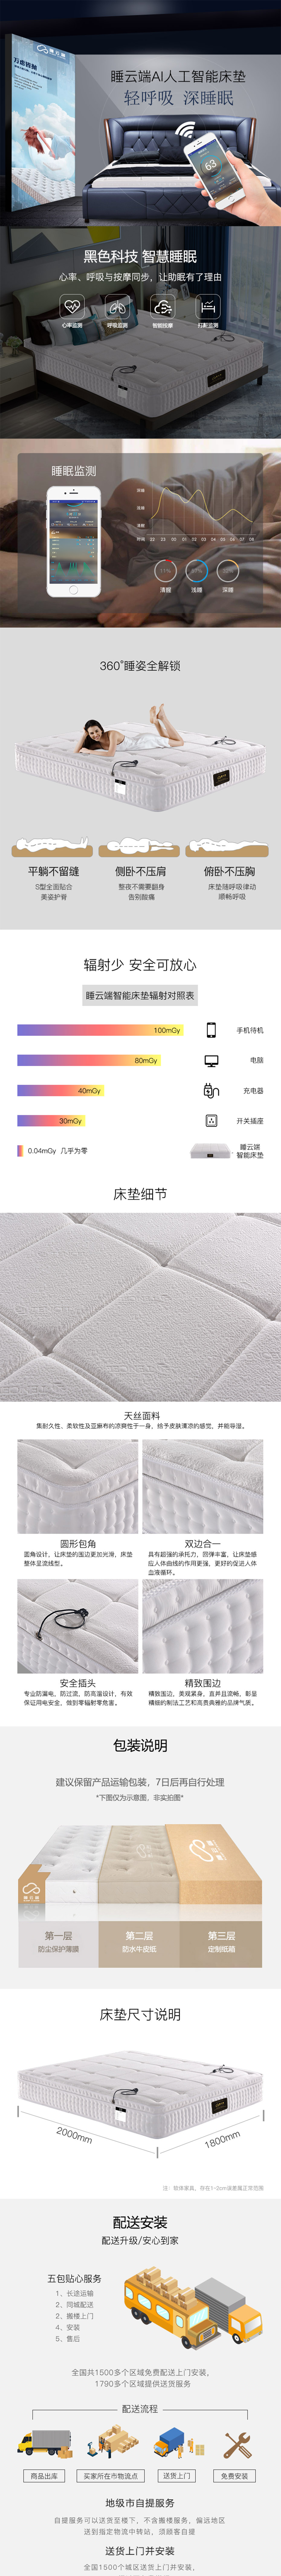 栖墨系列天丝面料智能床垫-中国十大排名床垫品牌_智能床垫-睡云端.jpg